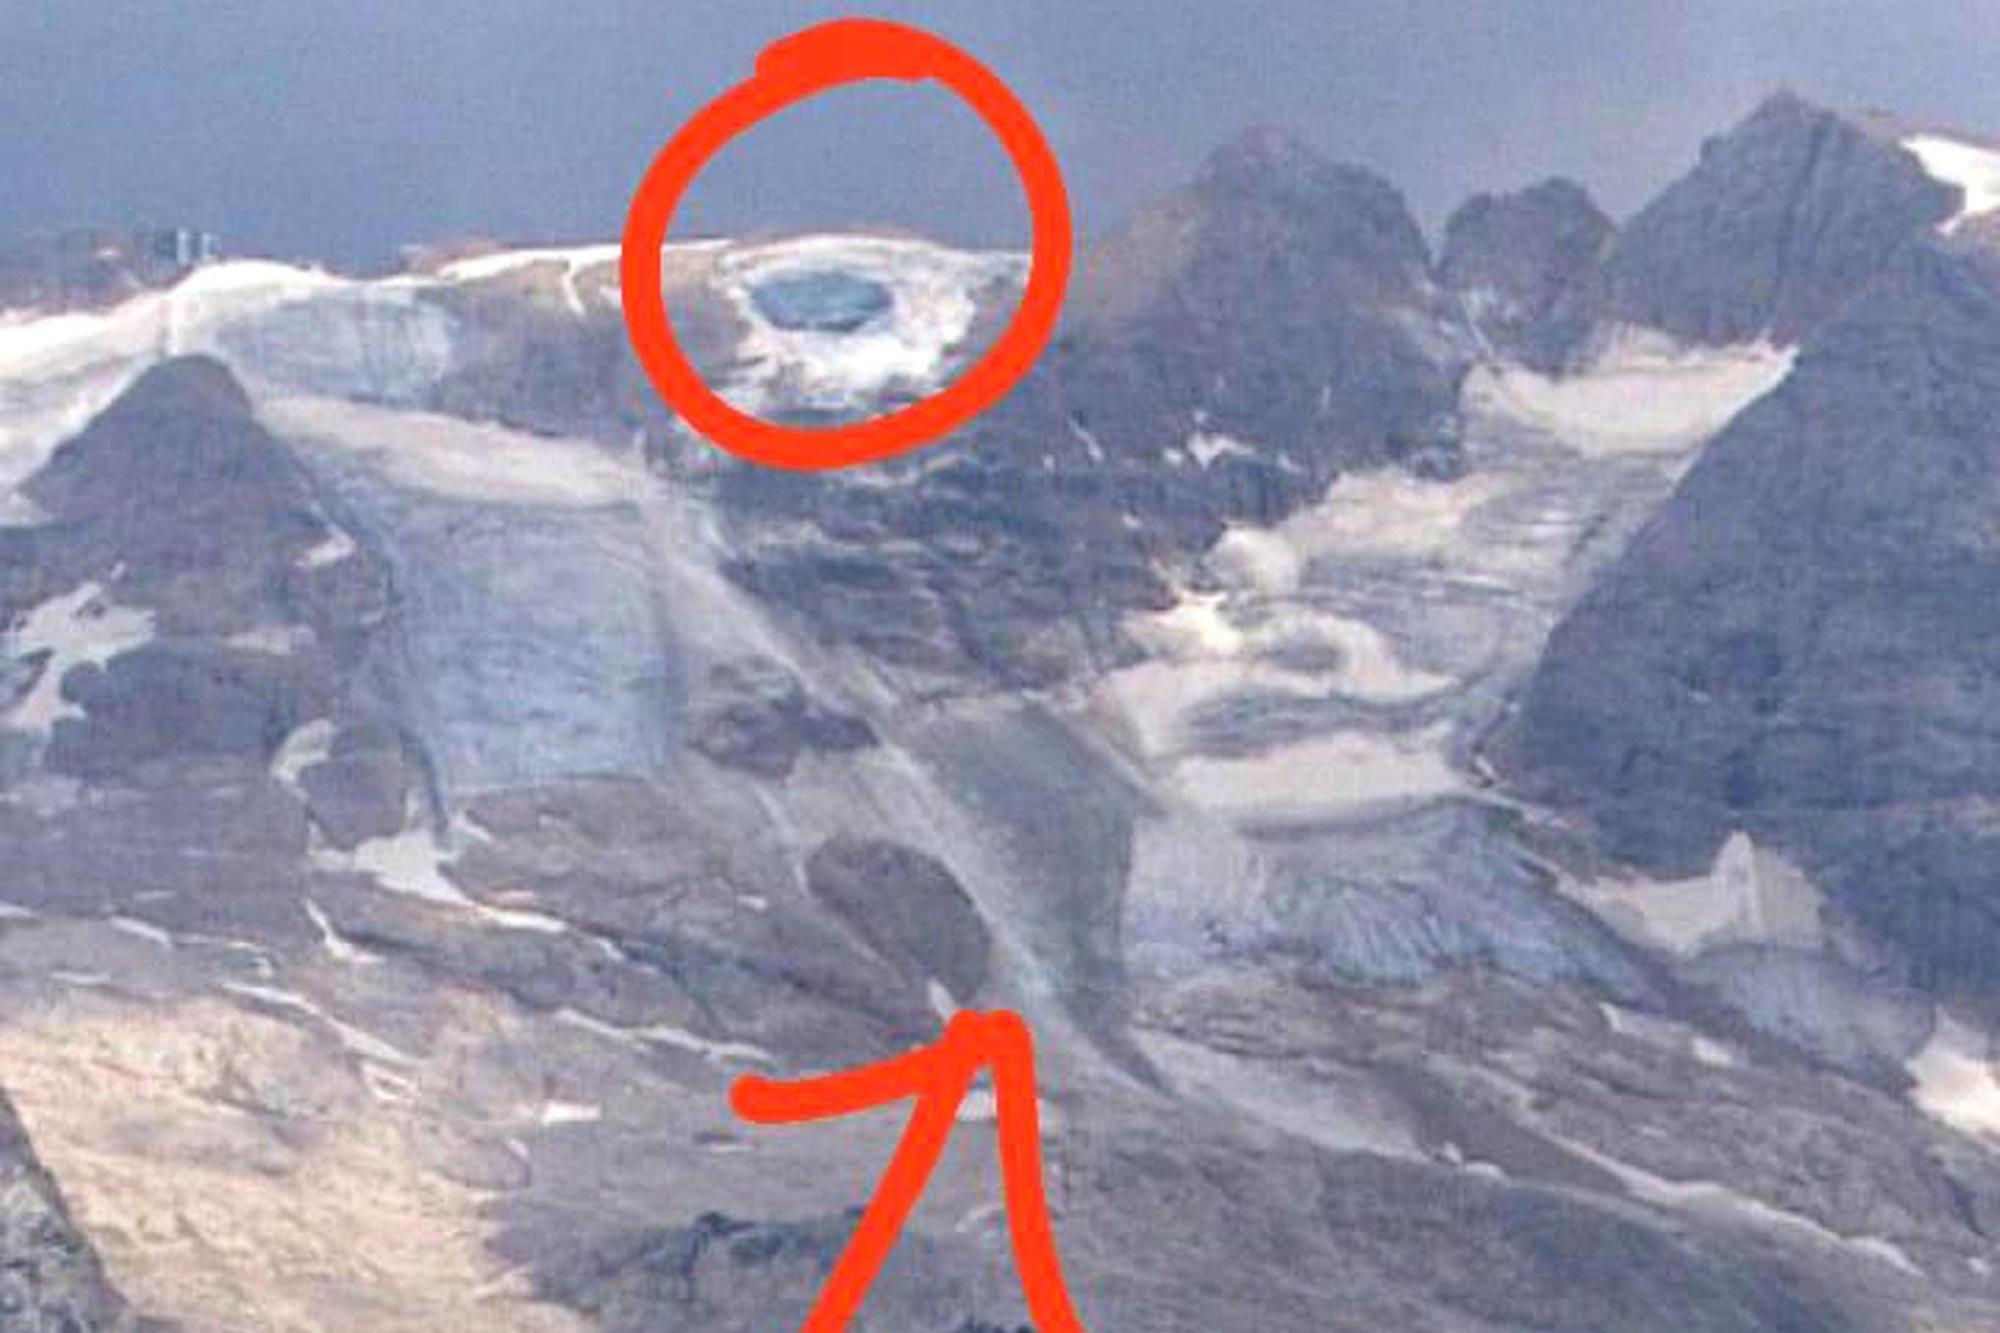 Il crollo si è verificato a oltre 3mila metri di altezza, con il ghiaccio che è precipitato a valle travolgendo decine di turisti